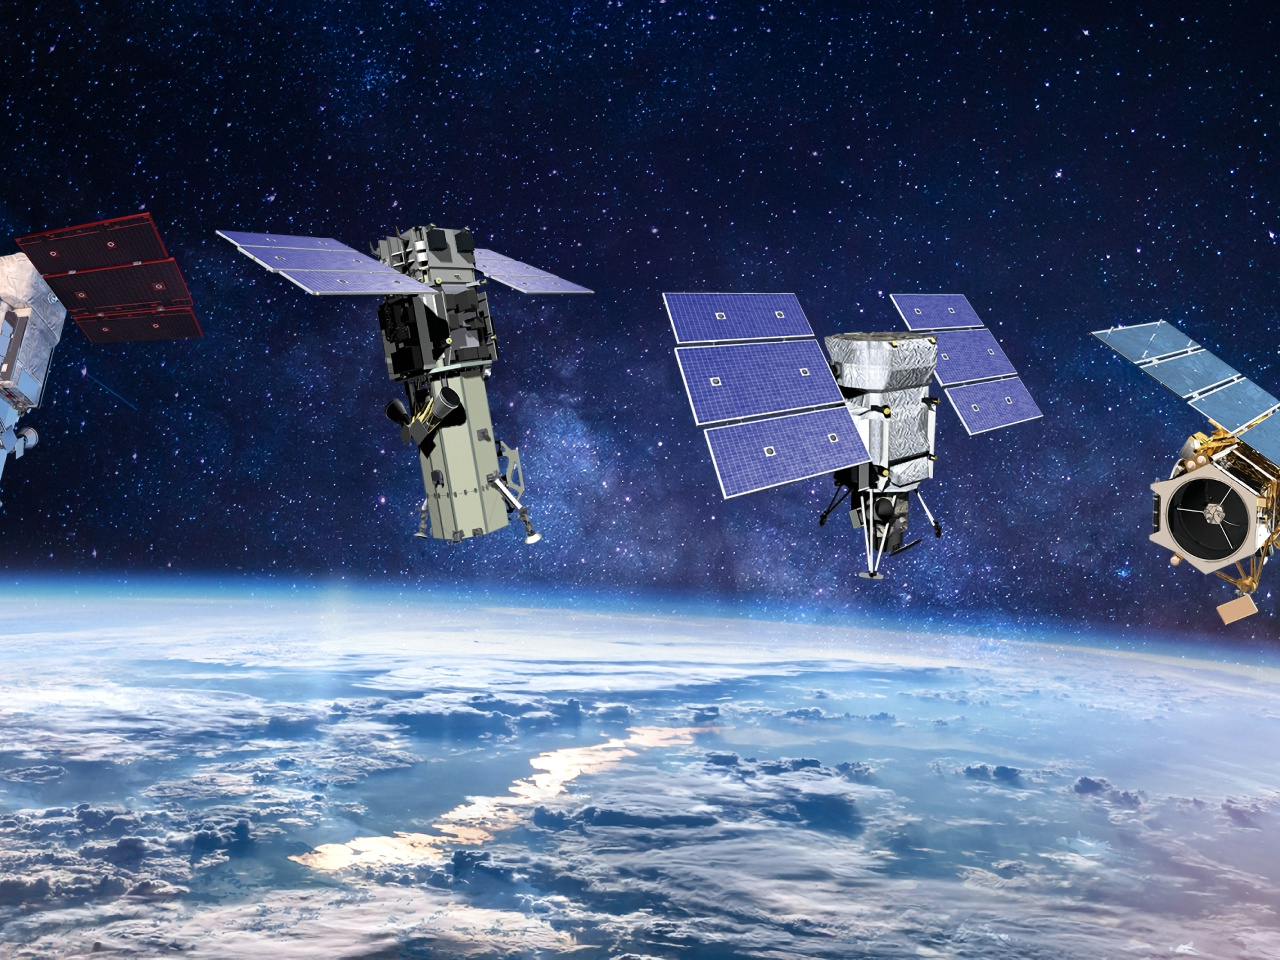 Maxar Technologies、宇宙機製造と衛星画像の2社に分割--人員削減も予定